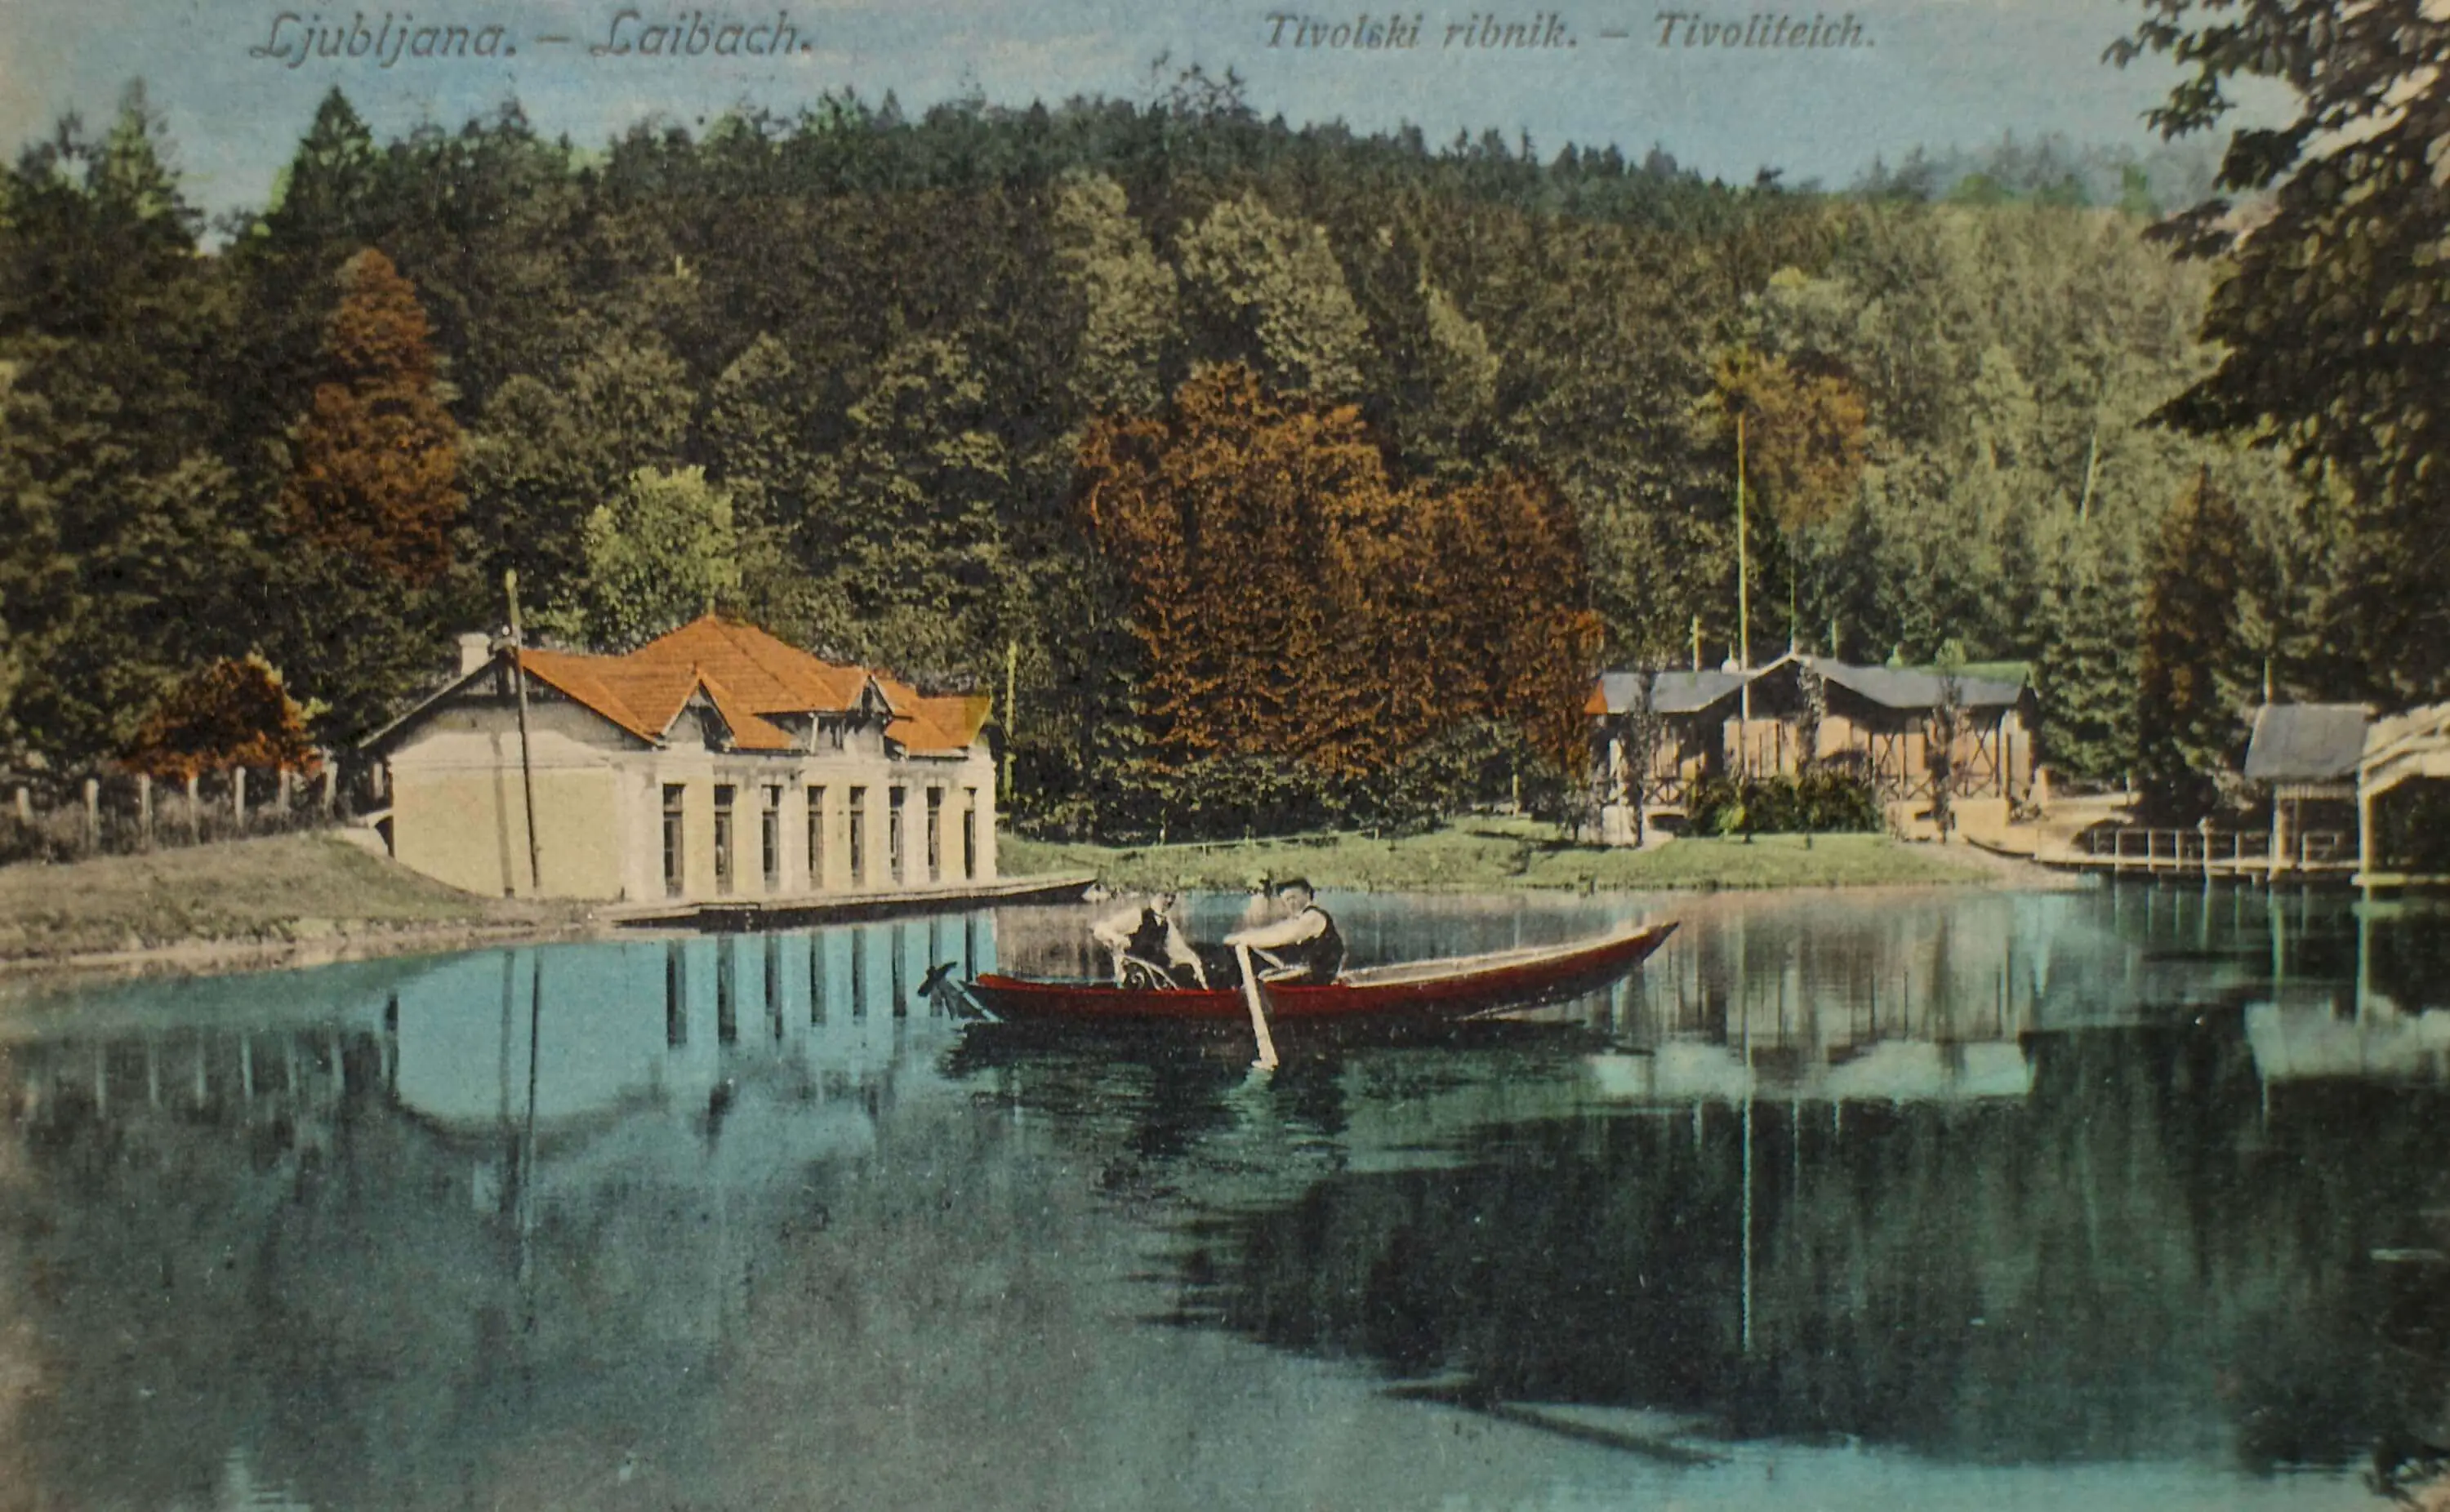 a Razglednica_tivolskega_ribnika_1912.jpg